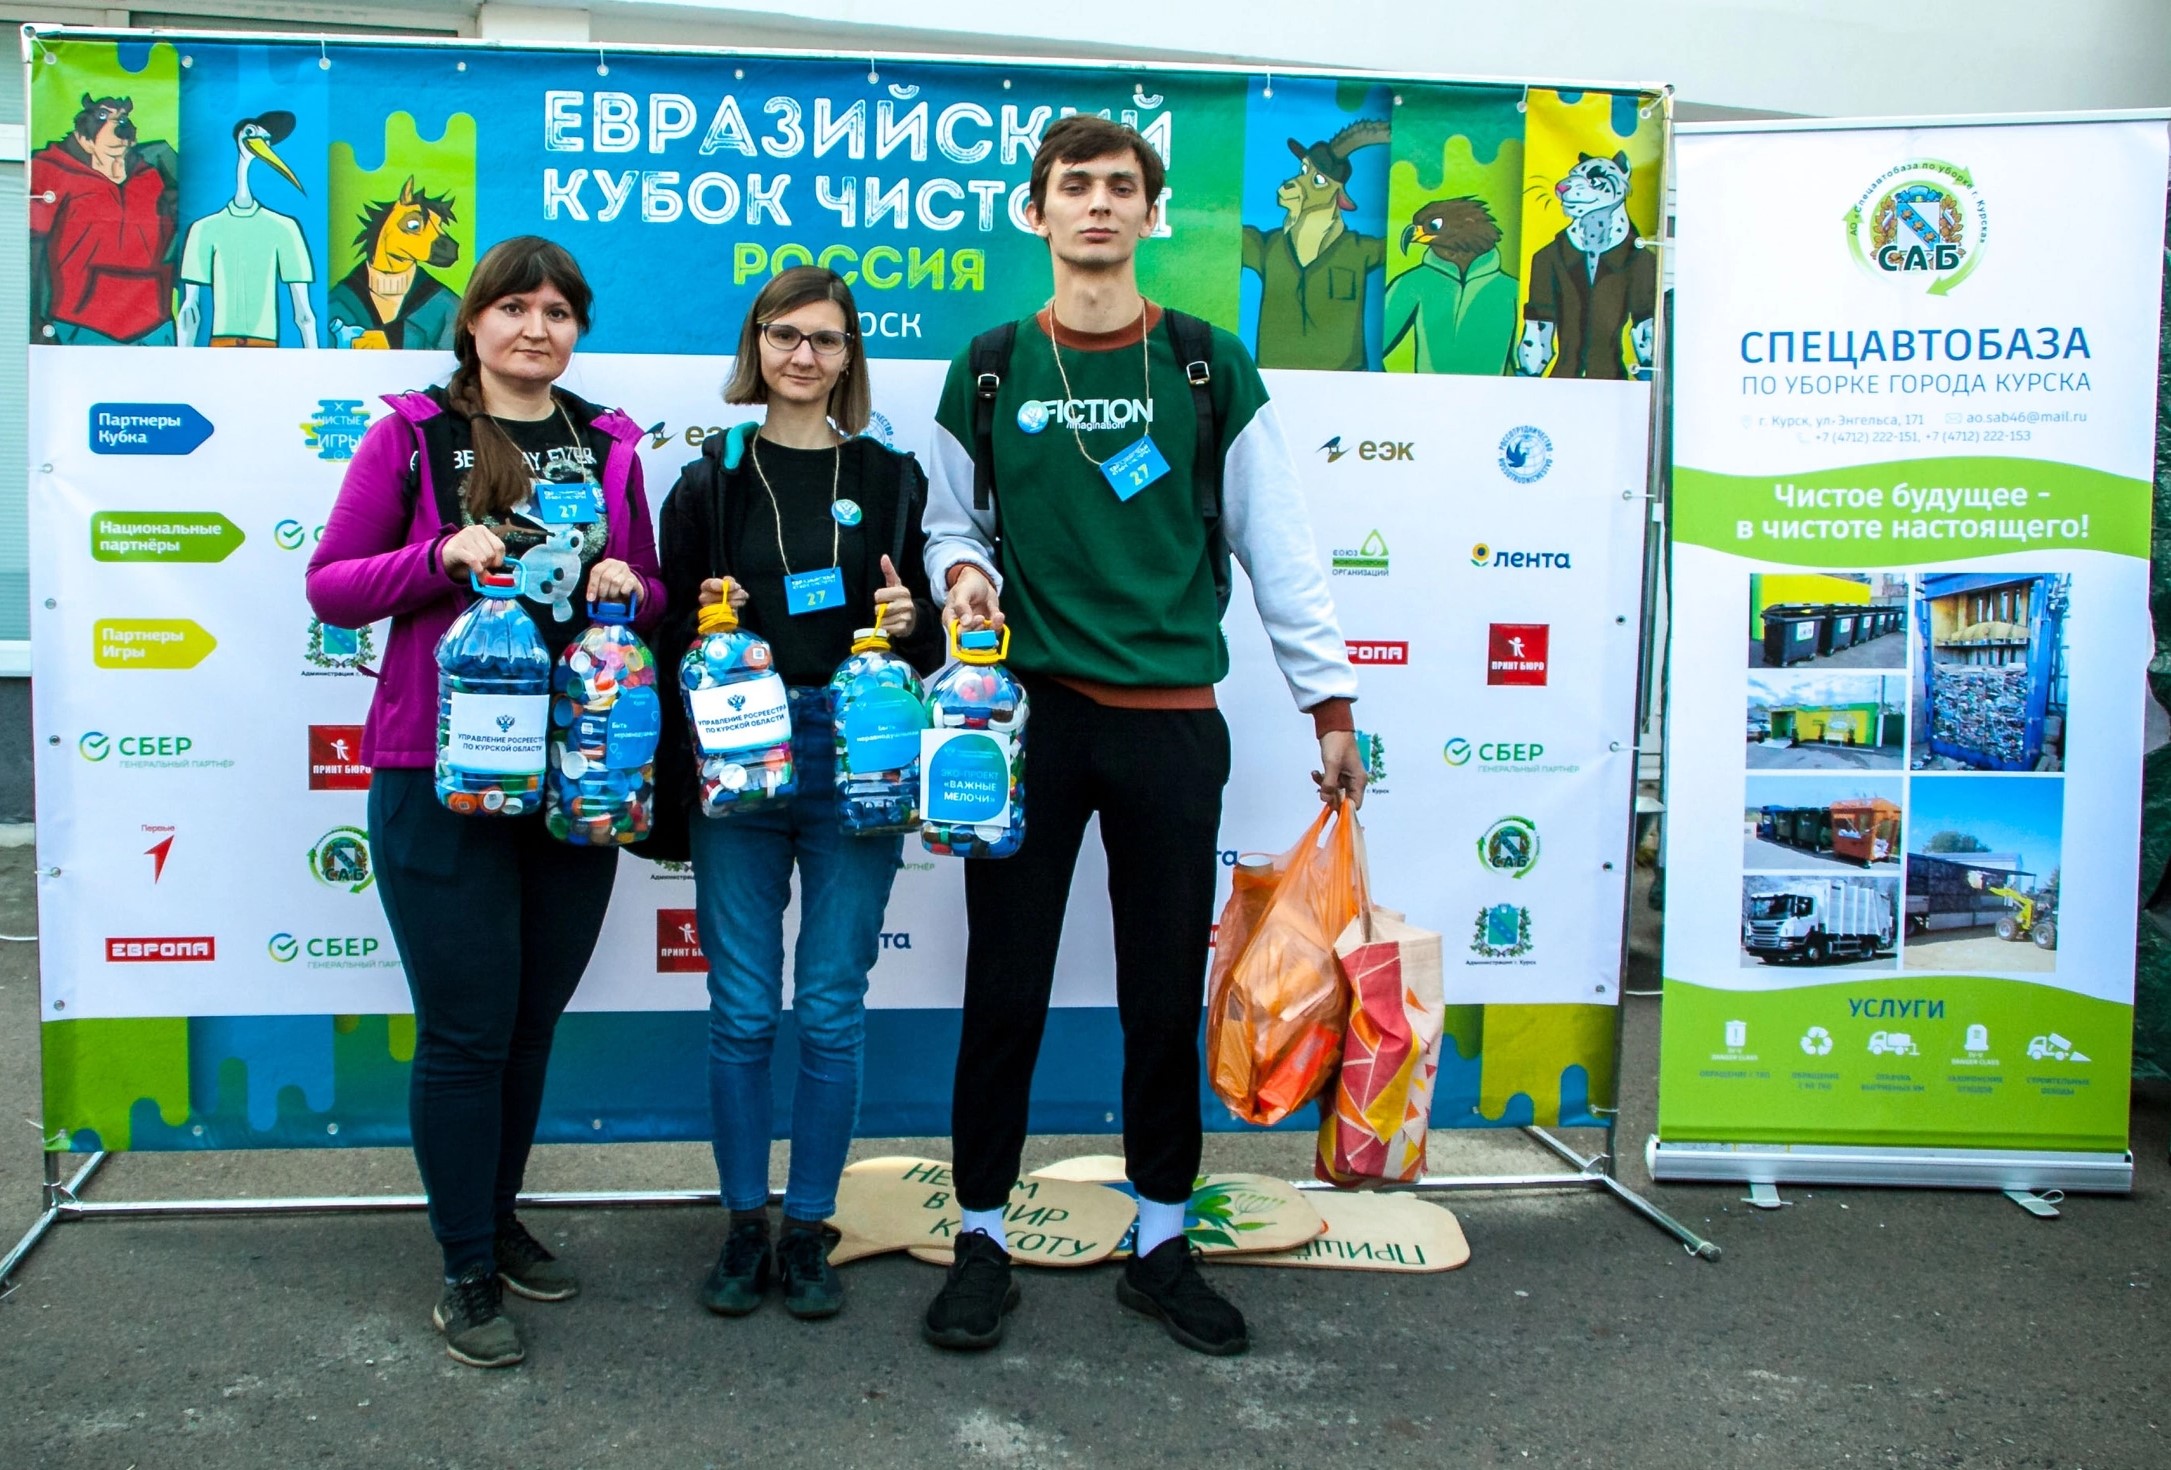 Сотрудники Управления Росреестра по Курской областиприняли участие вЕвразийском кубке чистоты Чистые игры.